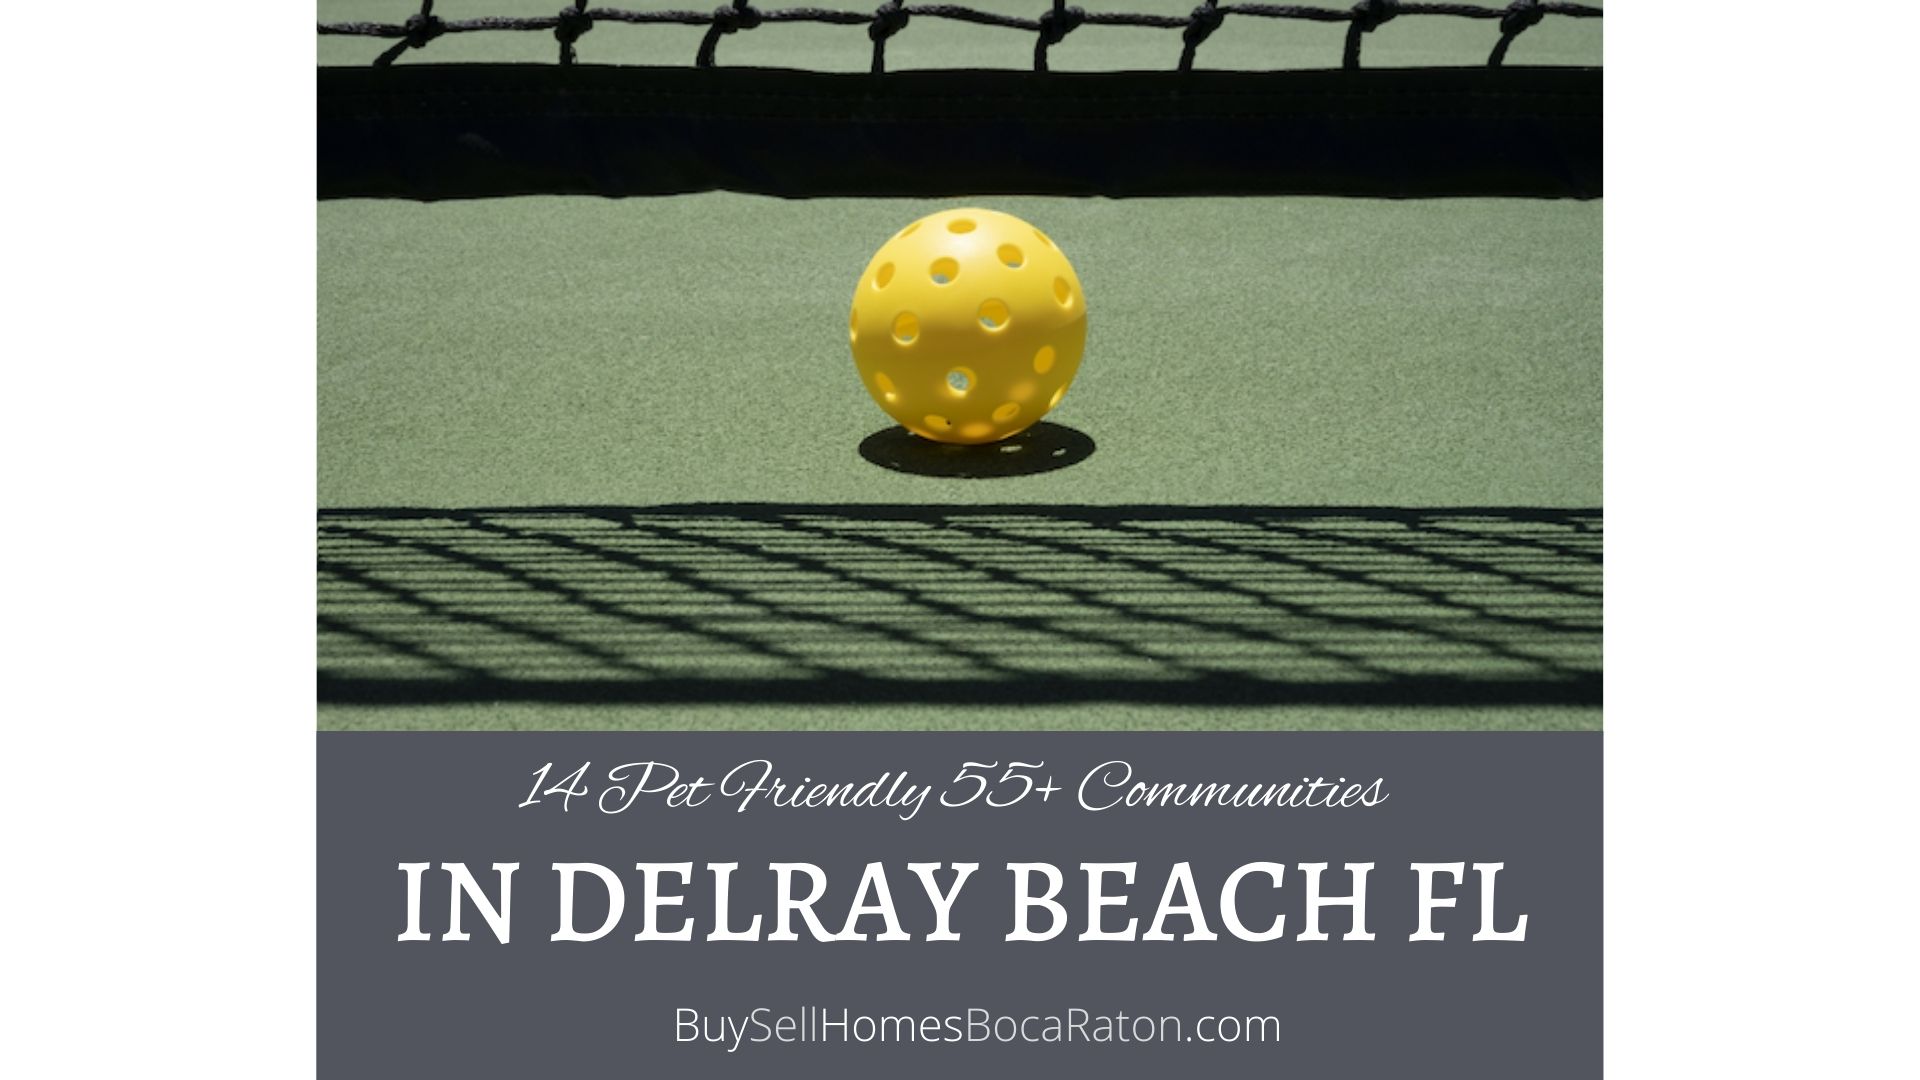 14 Pet Friendly 55+ Communities in Delray Beach FL